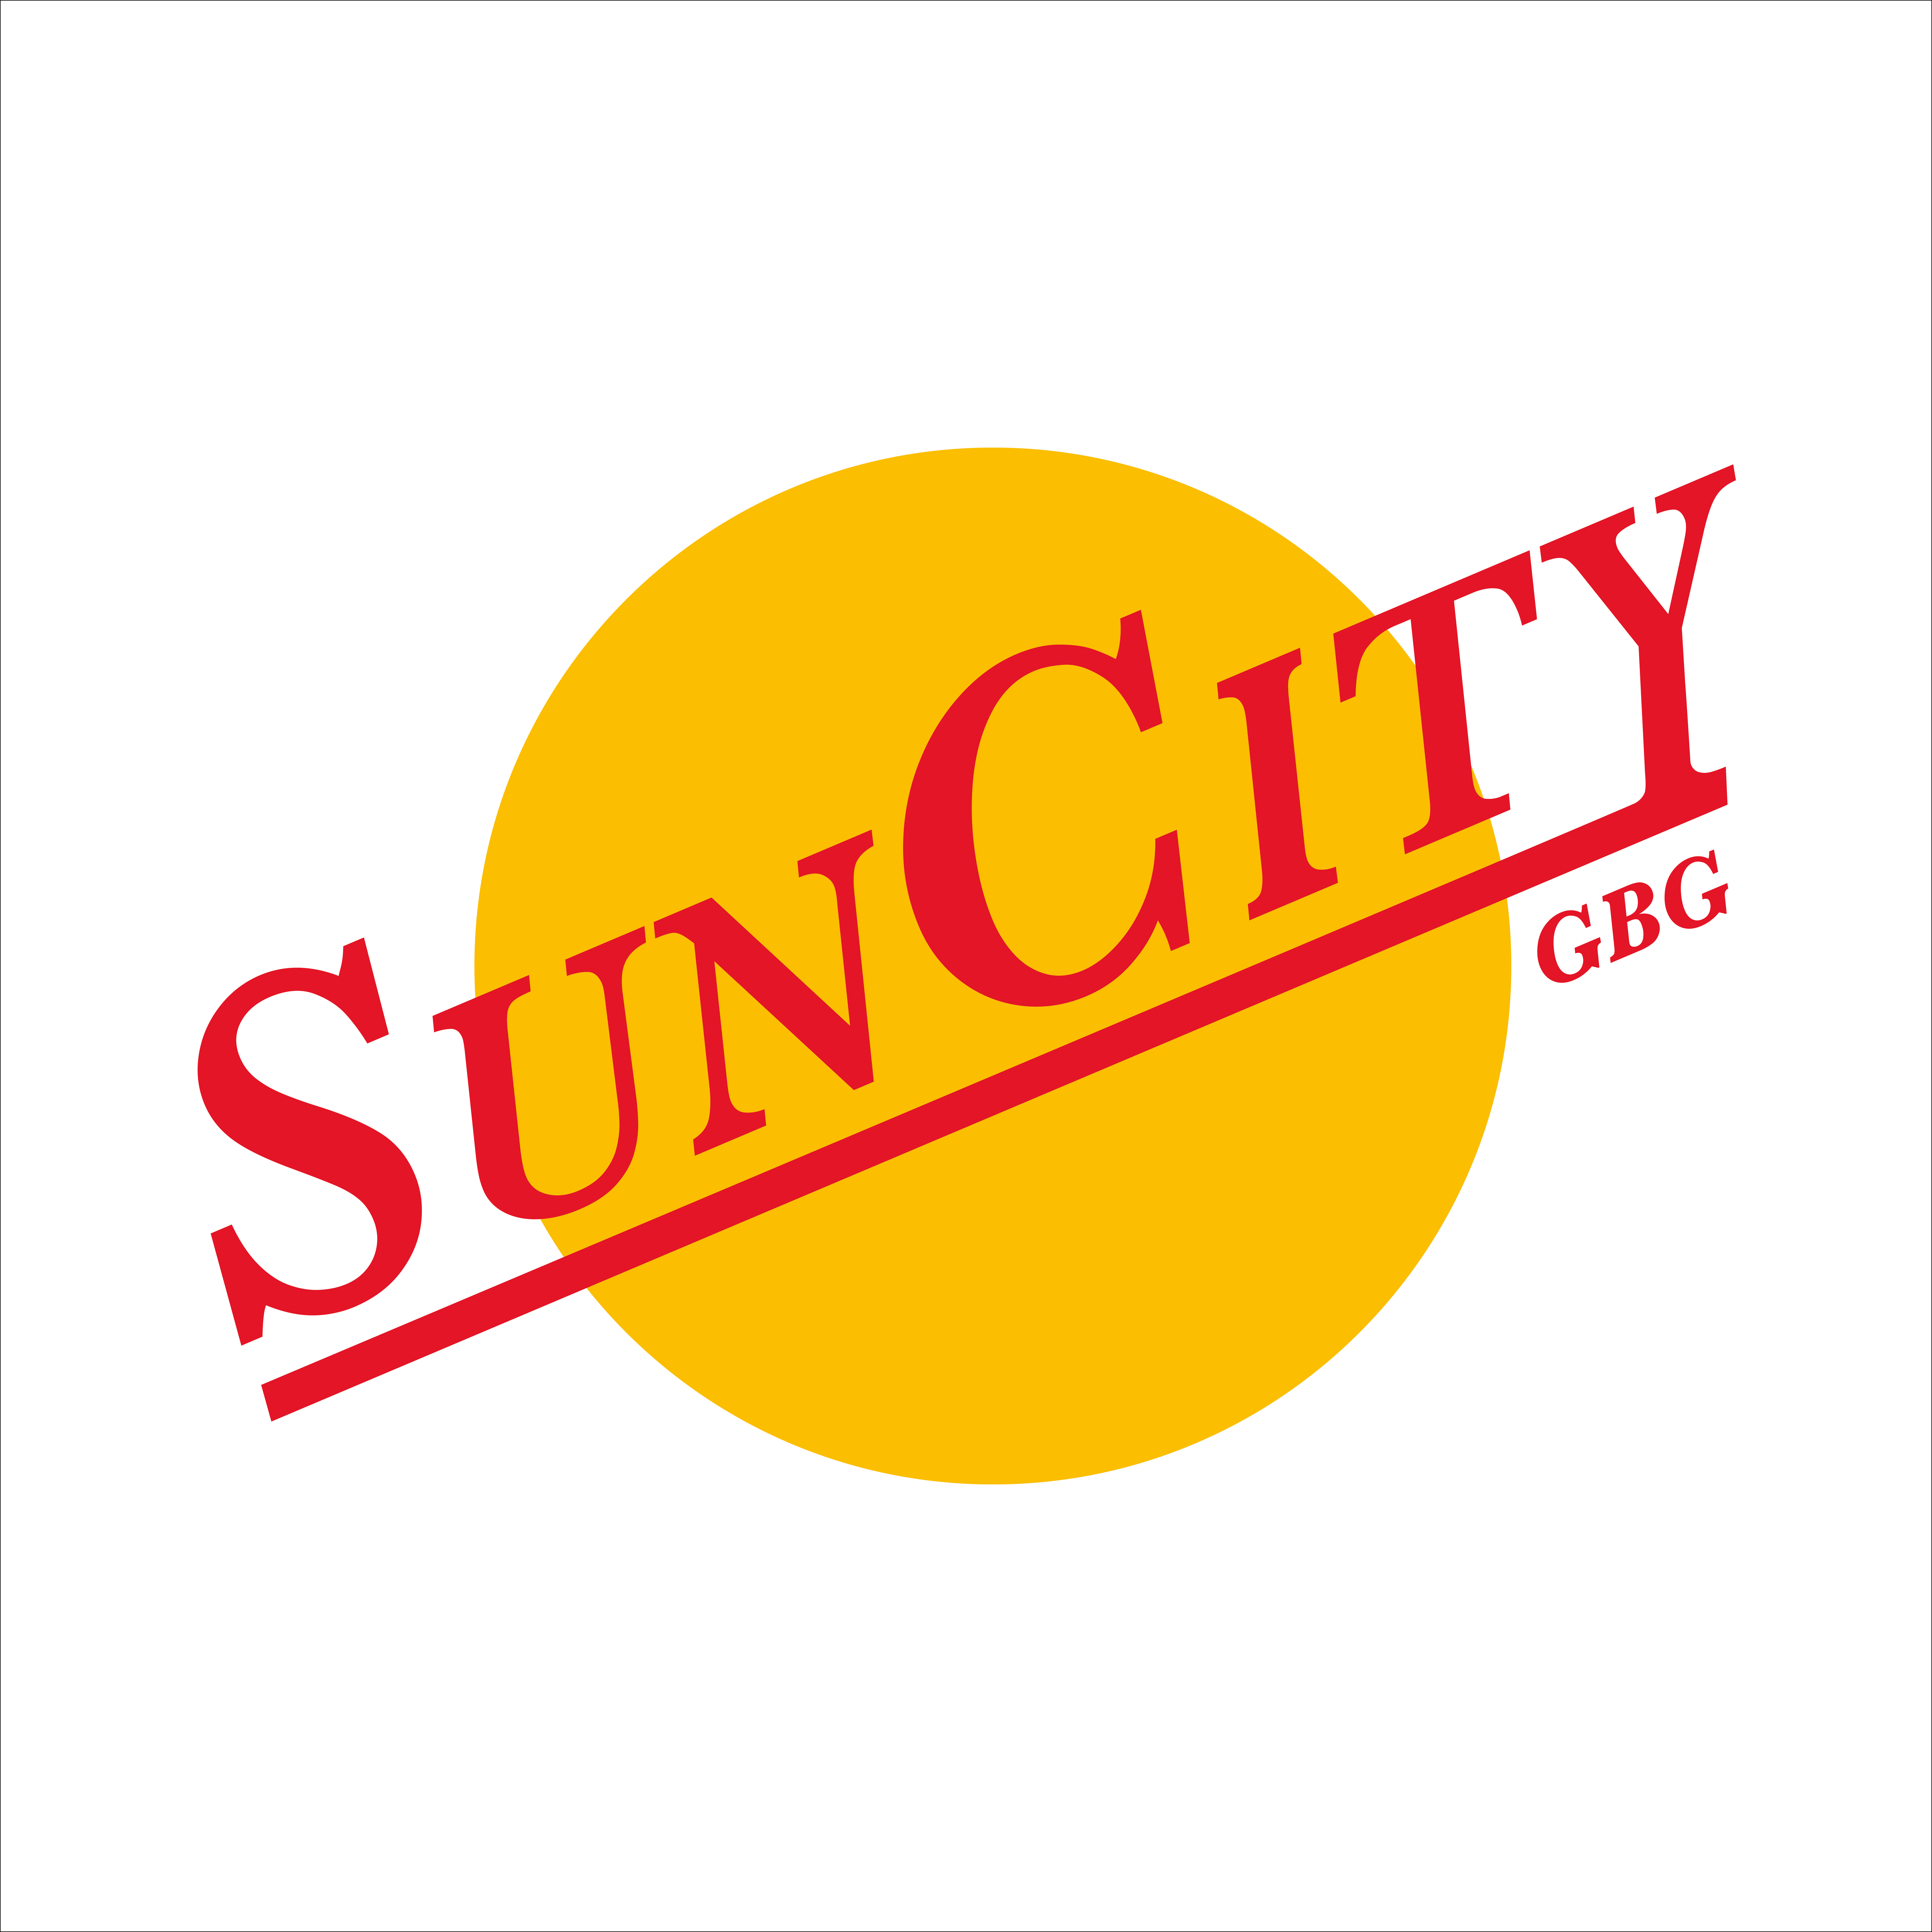 Sun City GBG_Omslag